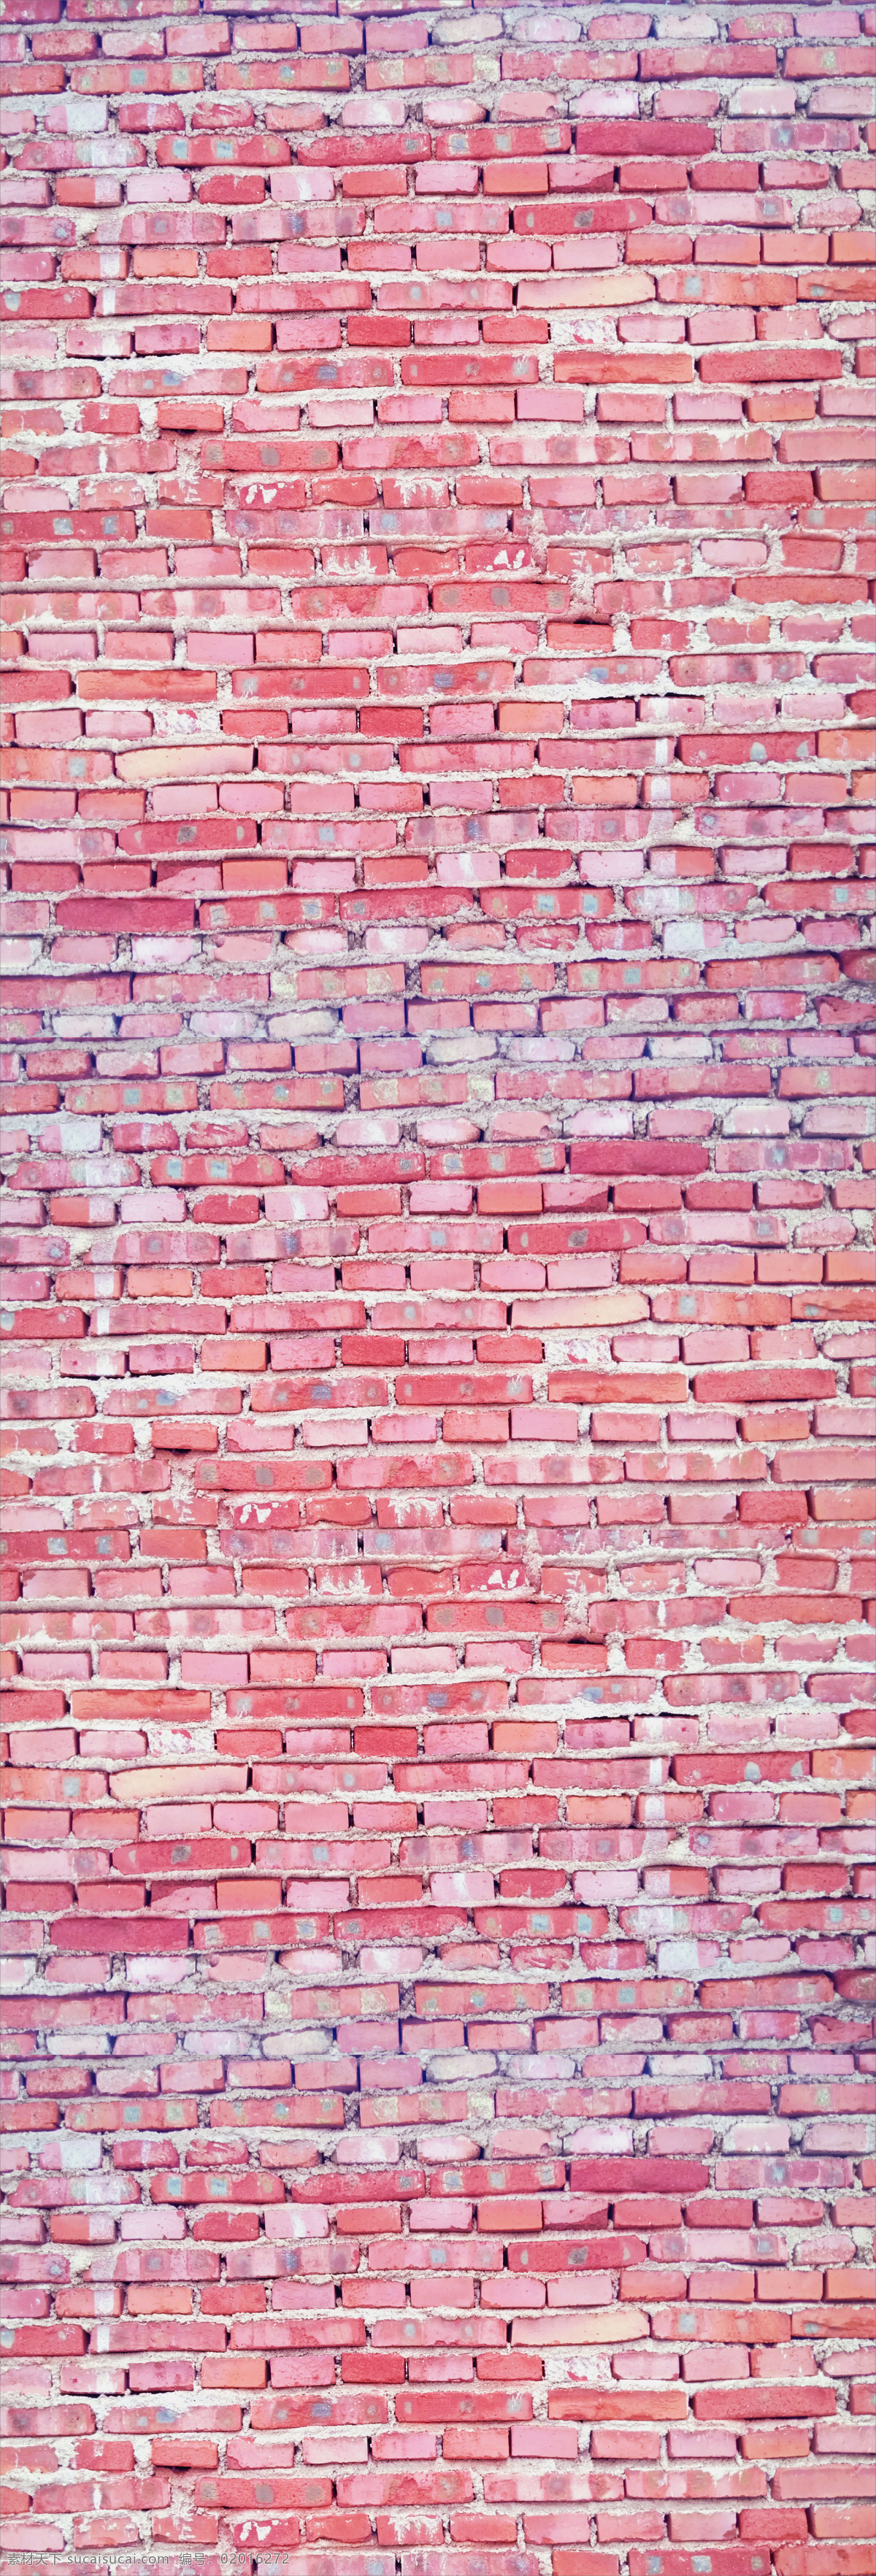 红砖 砖 墙面 背景 底图